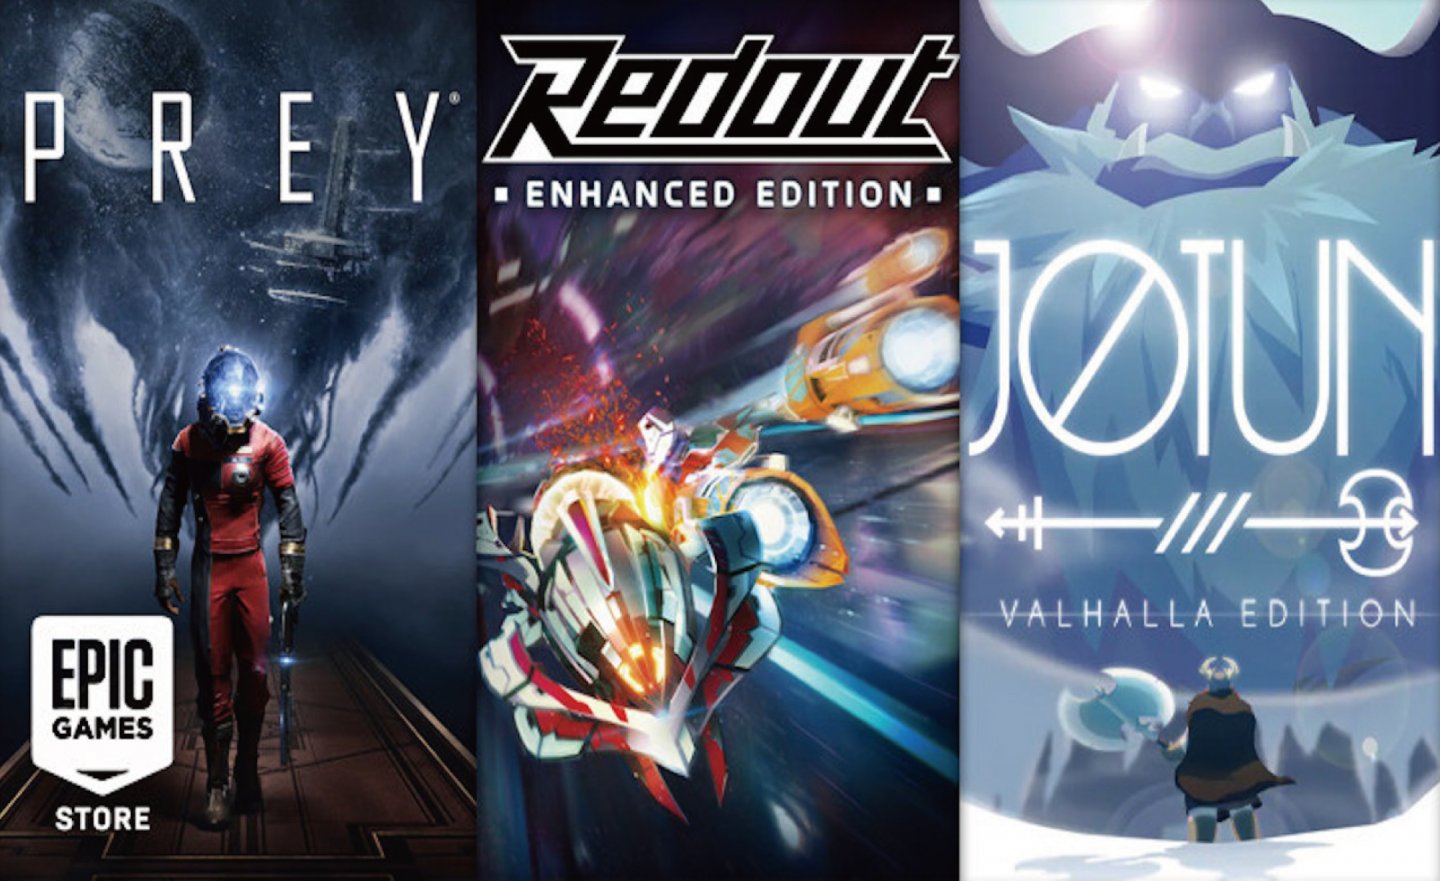 【限時免費】一次三款遊戲《Redout: Enhanced Edition》、《Jotun:Valhalla Edition》、《Prey》放送中，2022 年 5 月 19 日 23:00 前領取